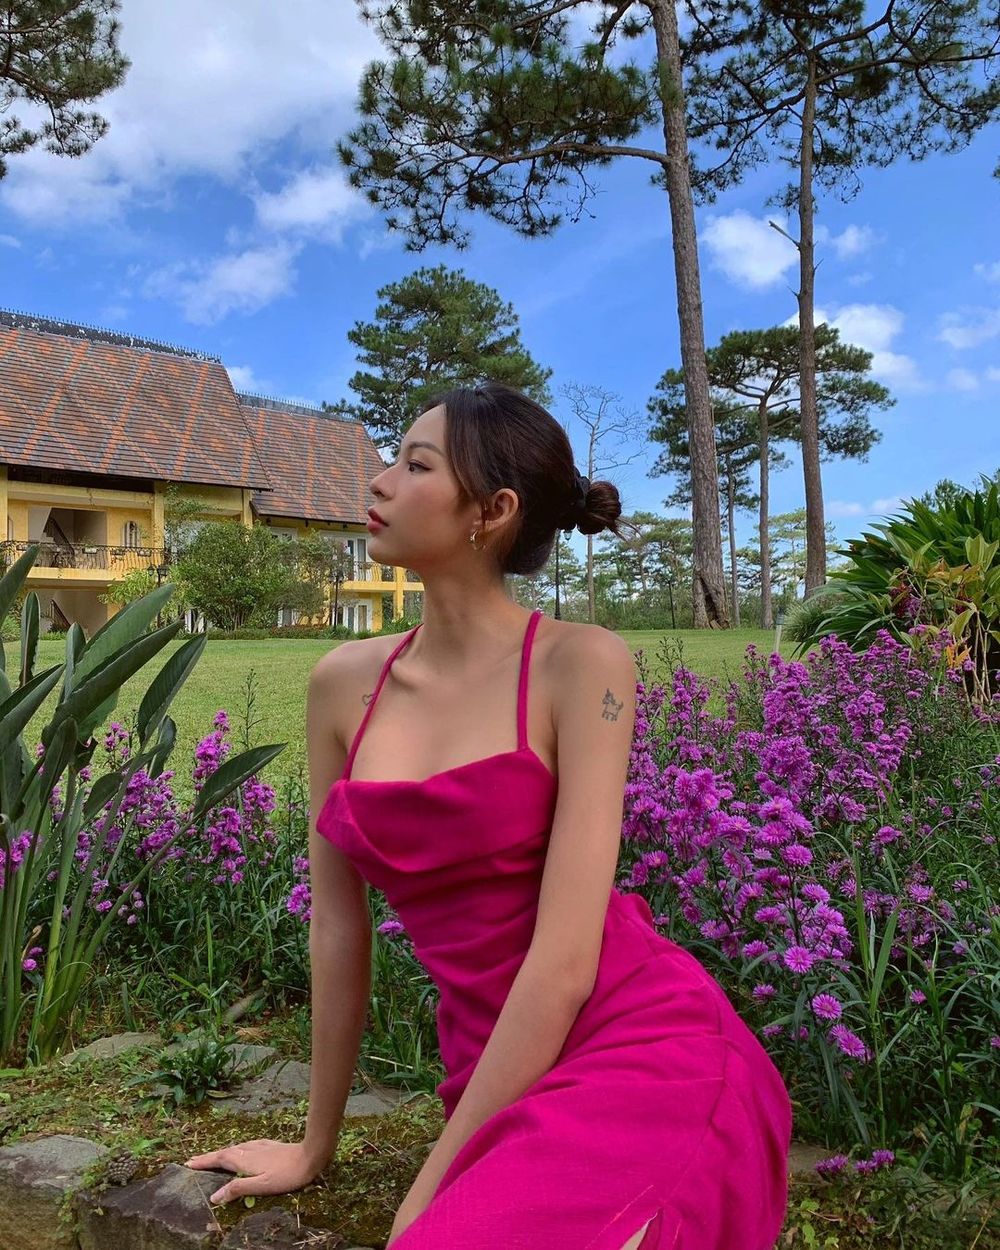  
Phí Phương Anh diện váy hai dây màu hồng rực đi du lịch Đà Lạt. (Ảnh: Instagram nhân vật)